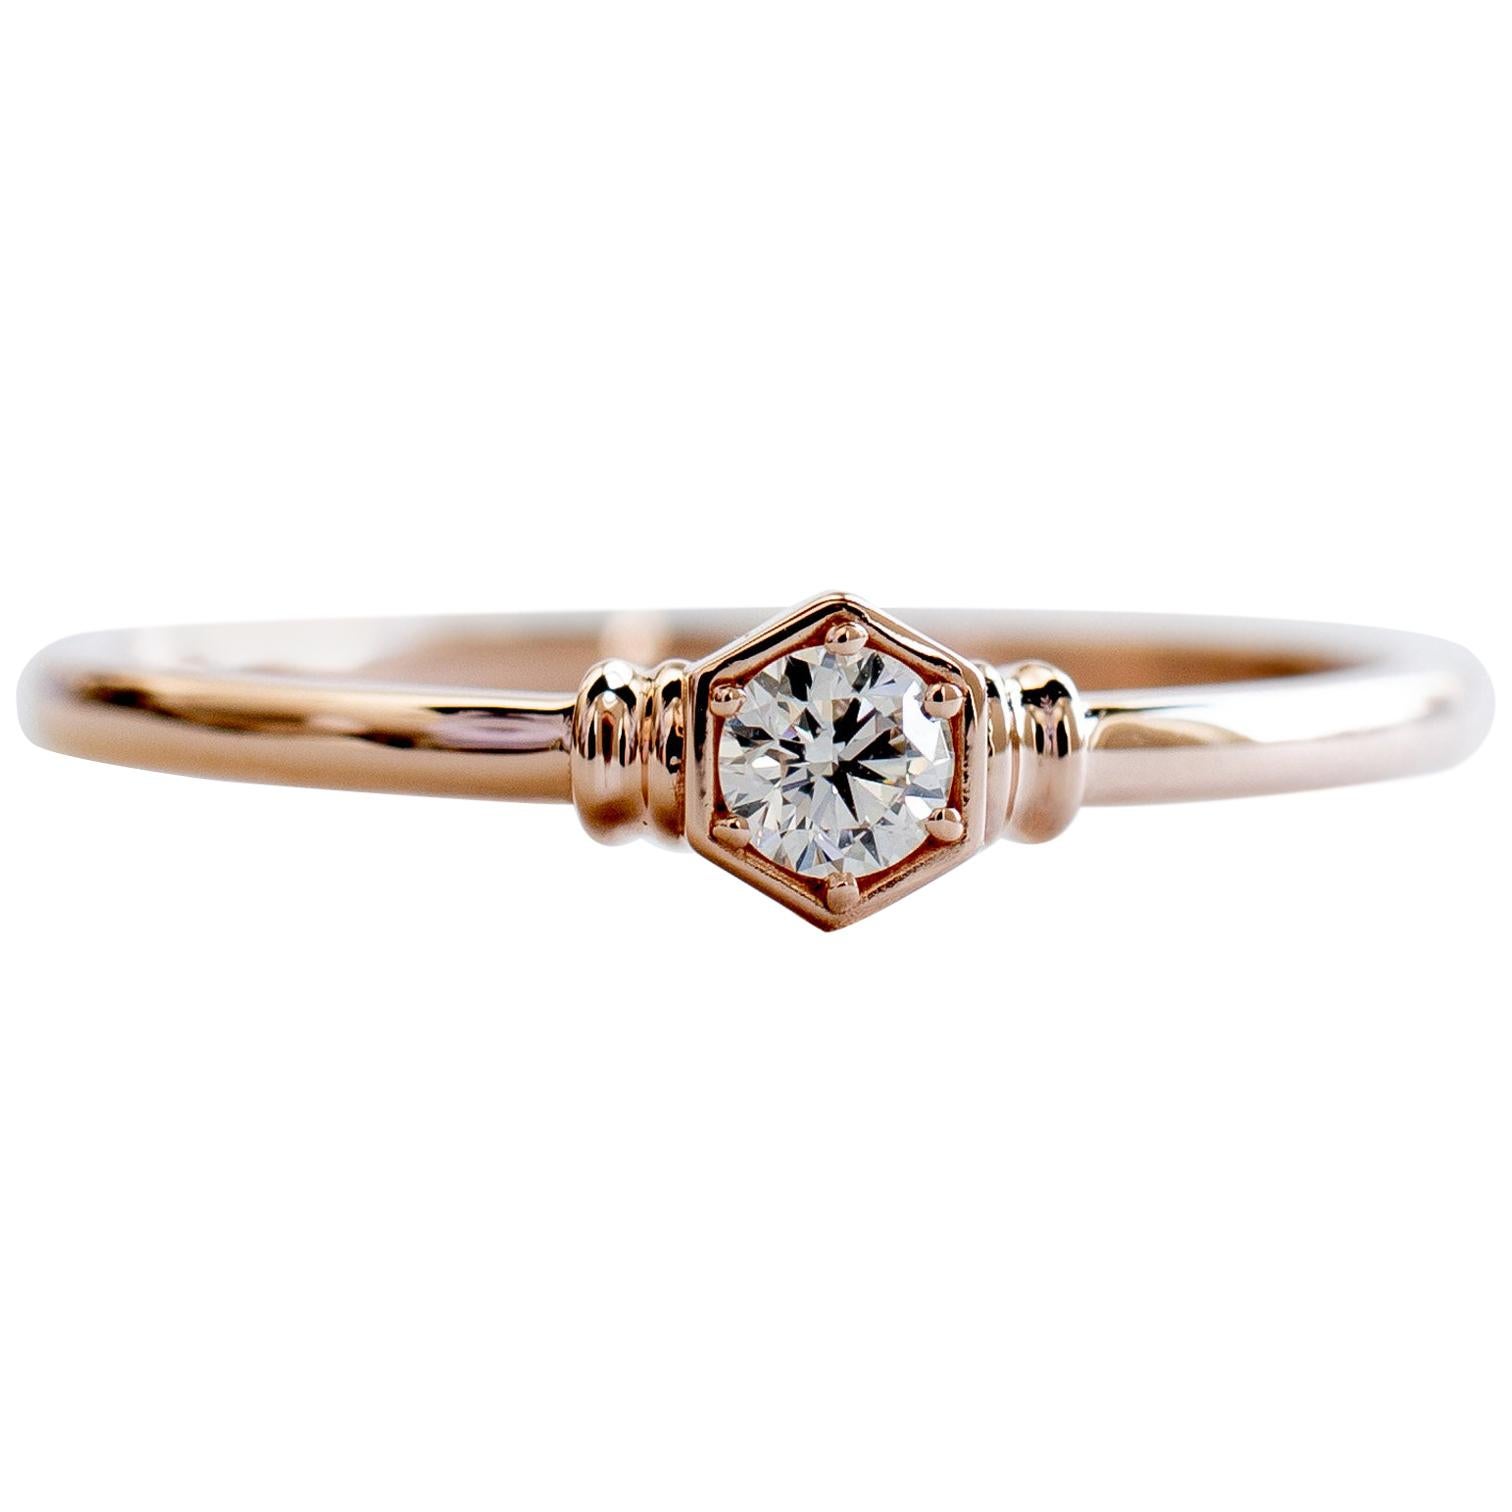 Hexagon Ring with 0.1 Carat Diamond, Honeycomb Ring, 18 Karat White Gold Ring